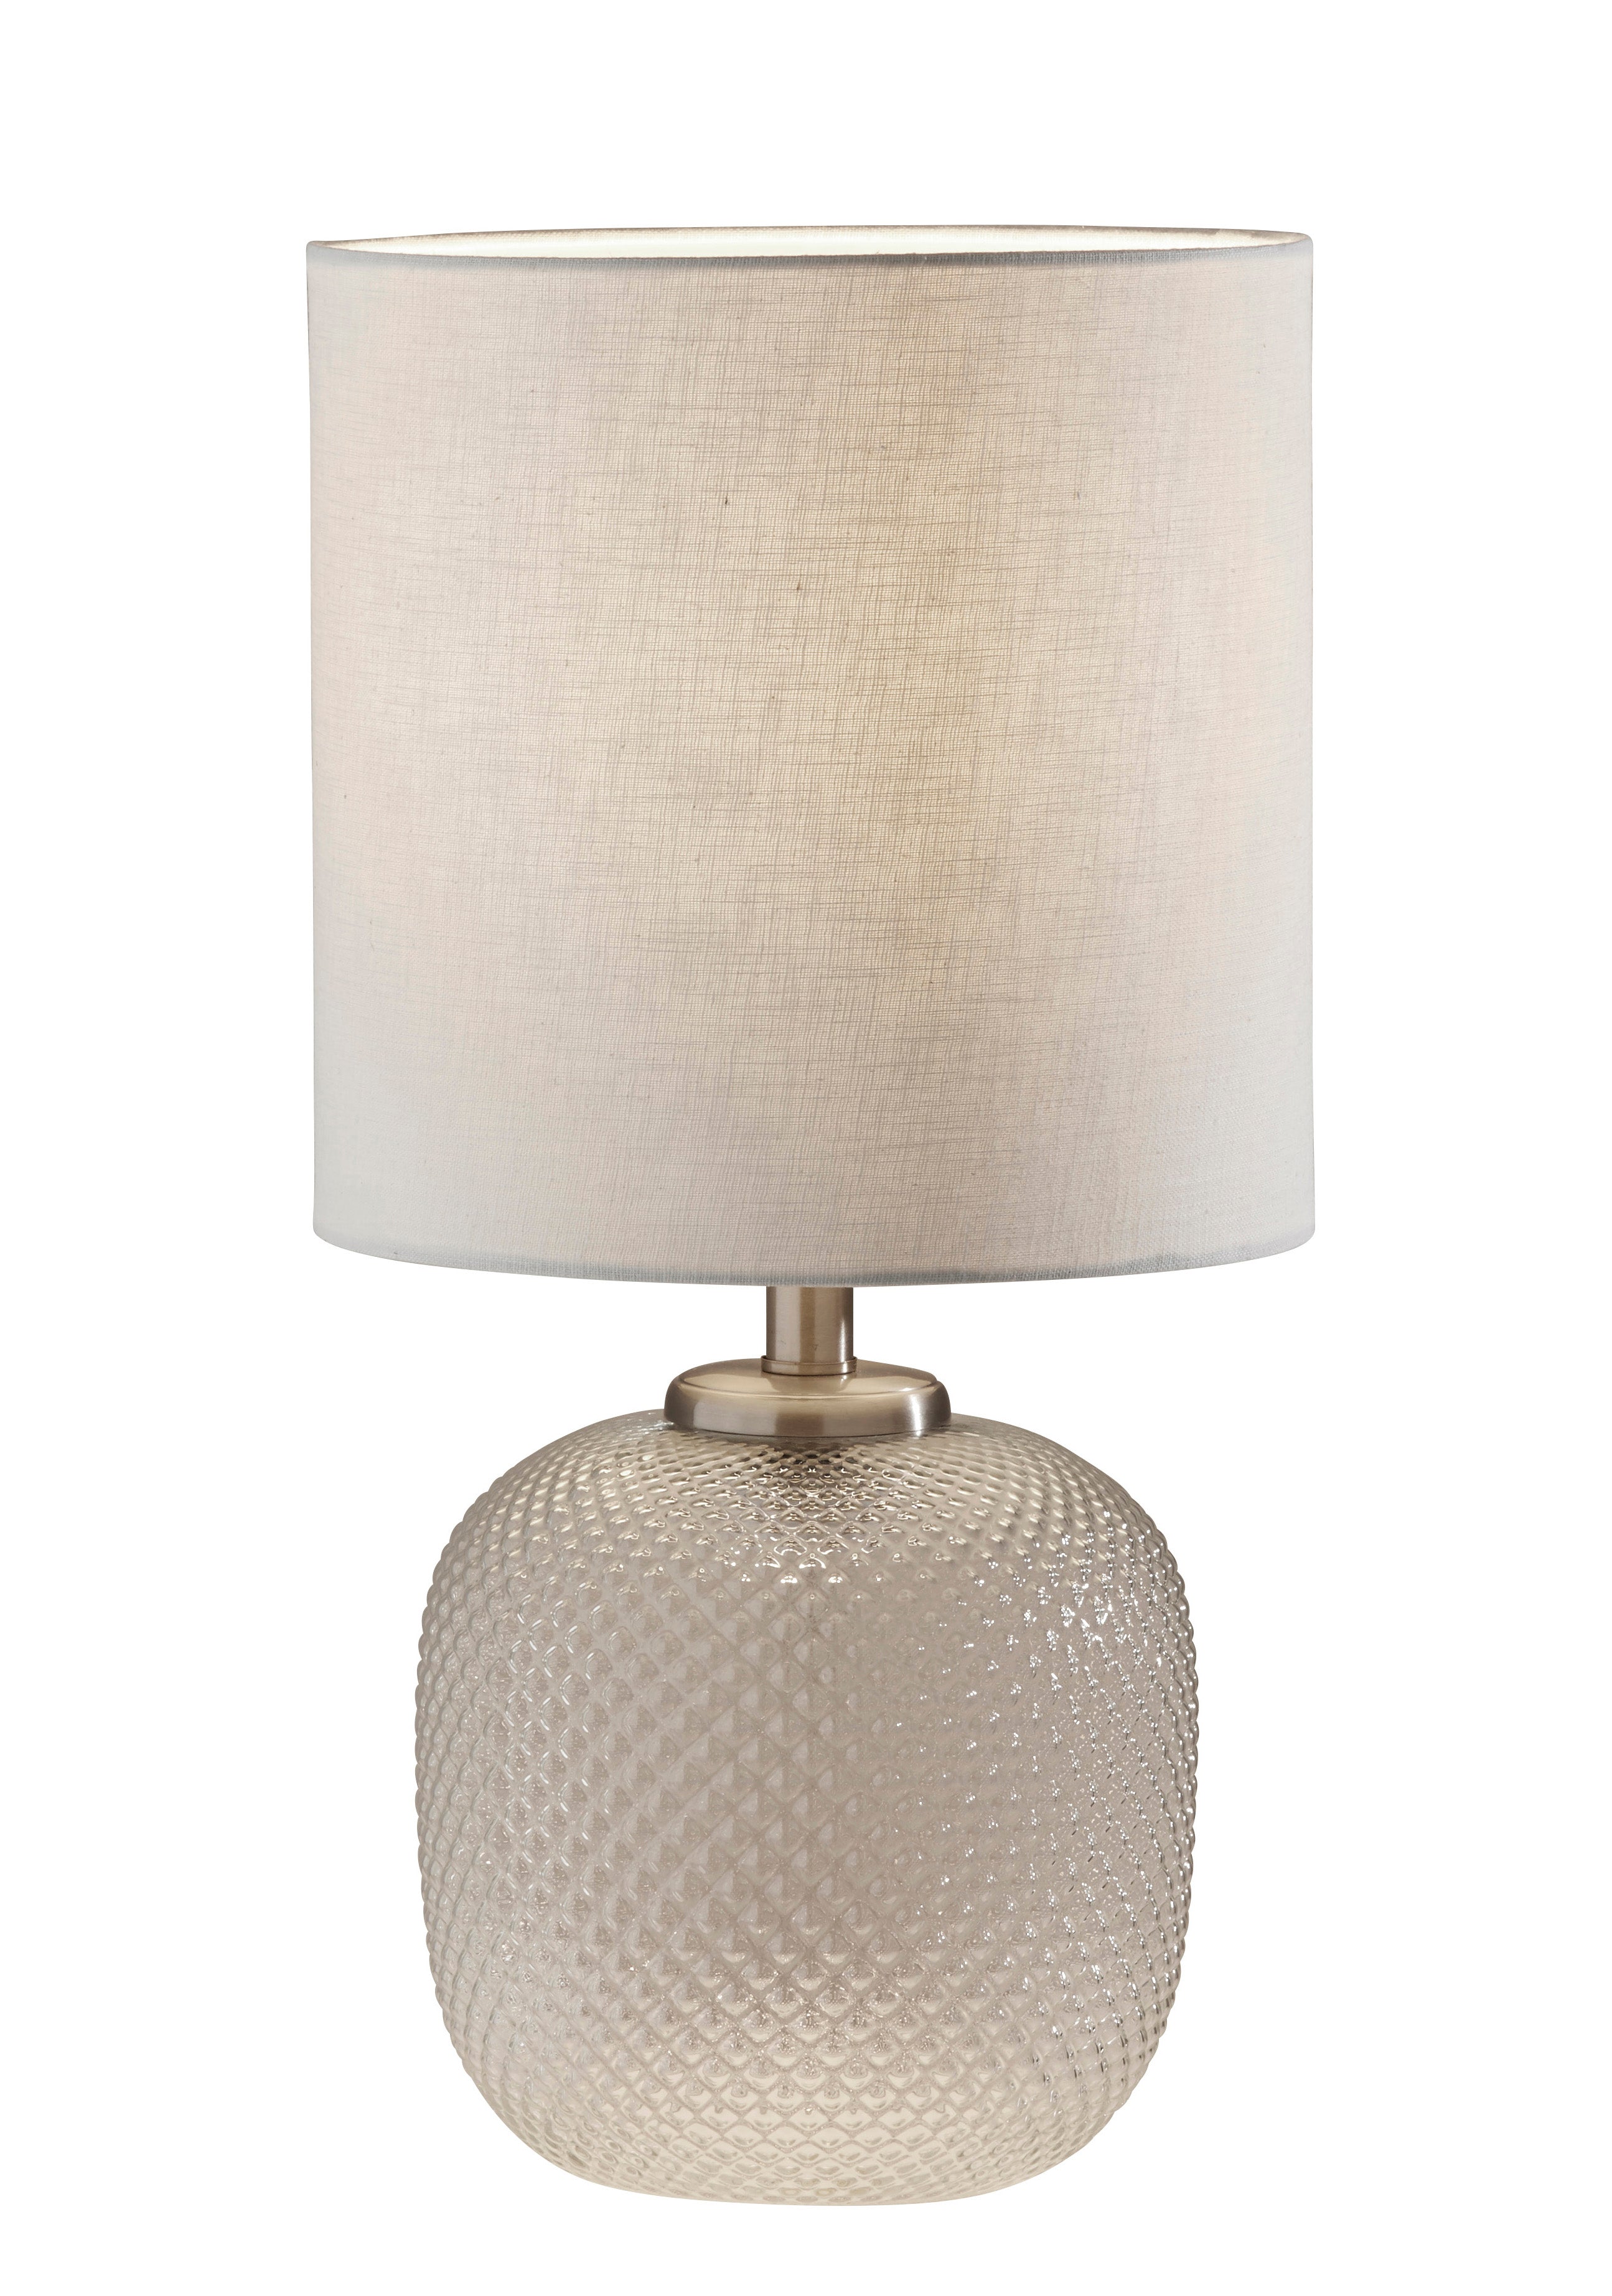 VIVIAN Lampe sur table Nickel - 3576-22 | ADESSO